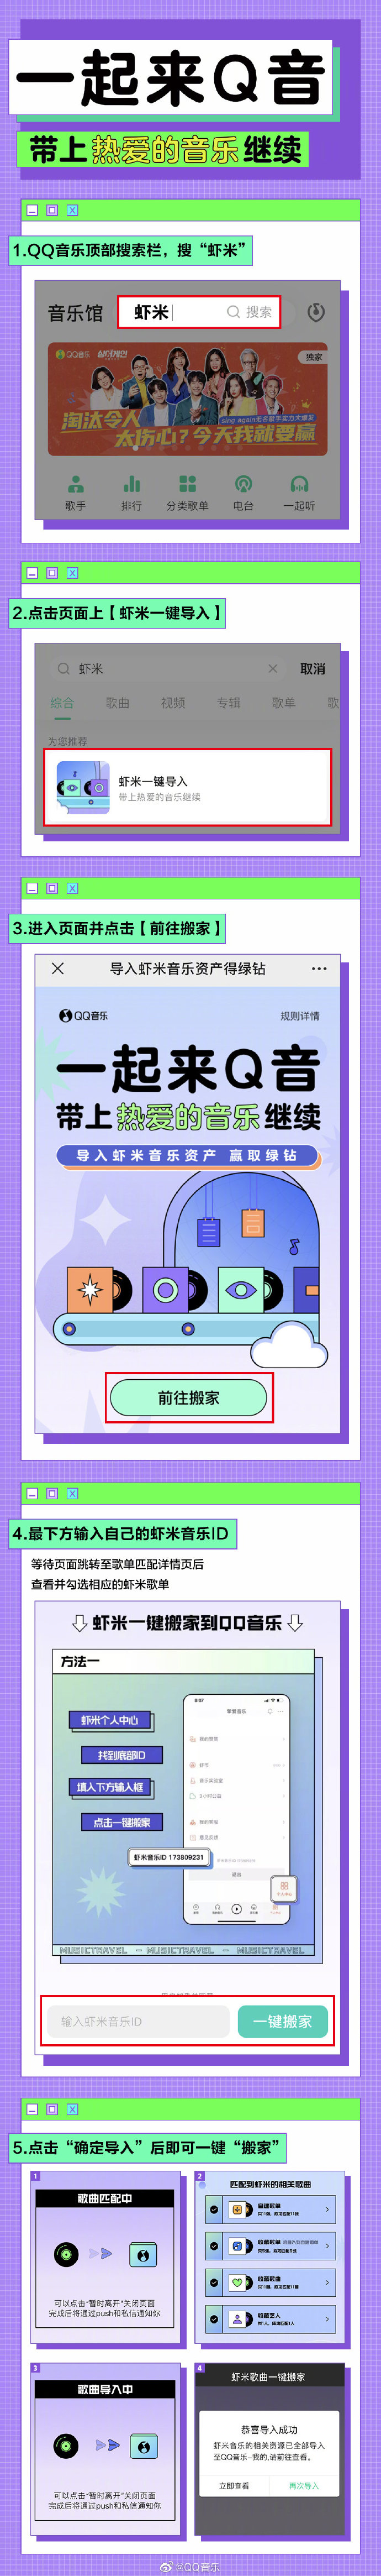 腾讯 QQ 音乐上线 “虾米歌曲一键搬家”功能